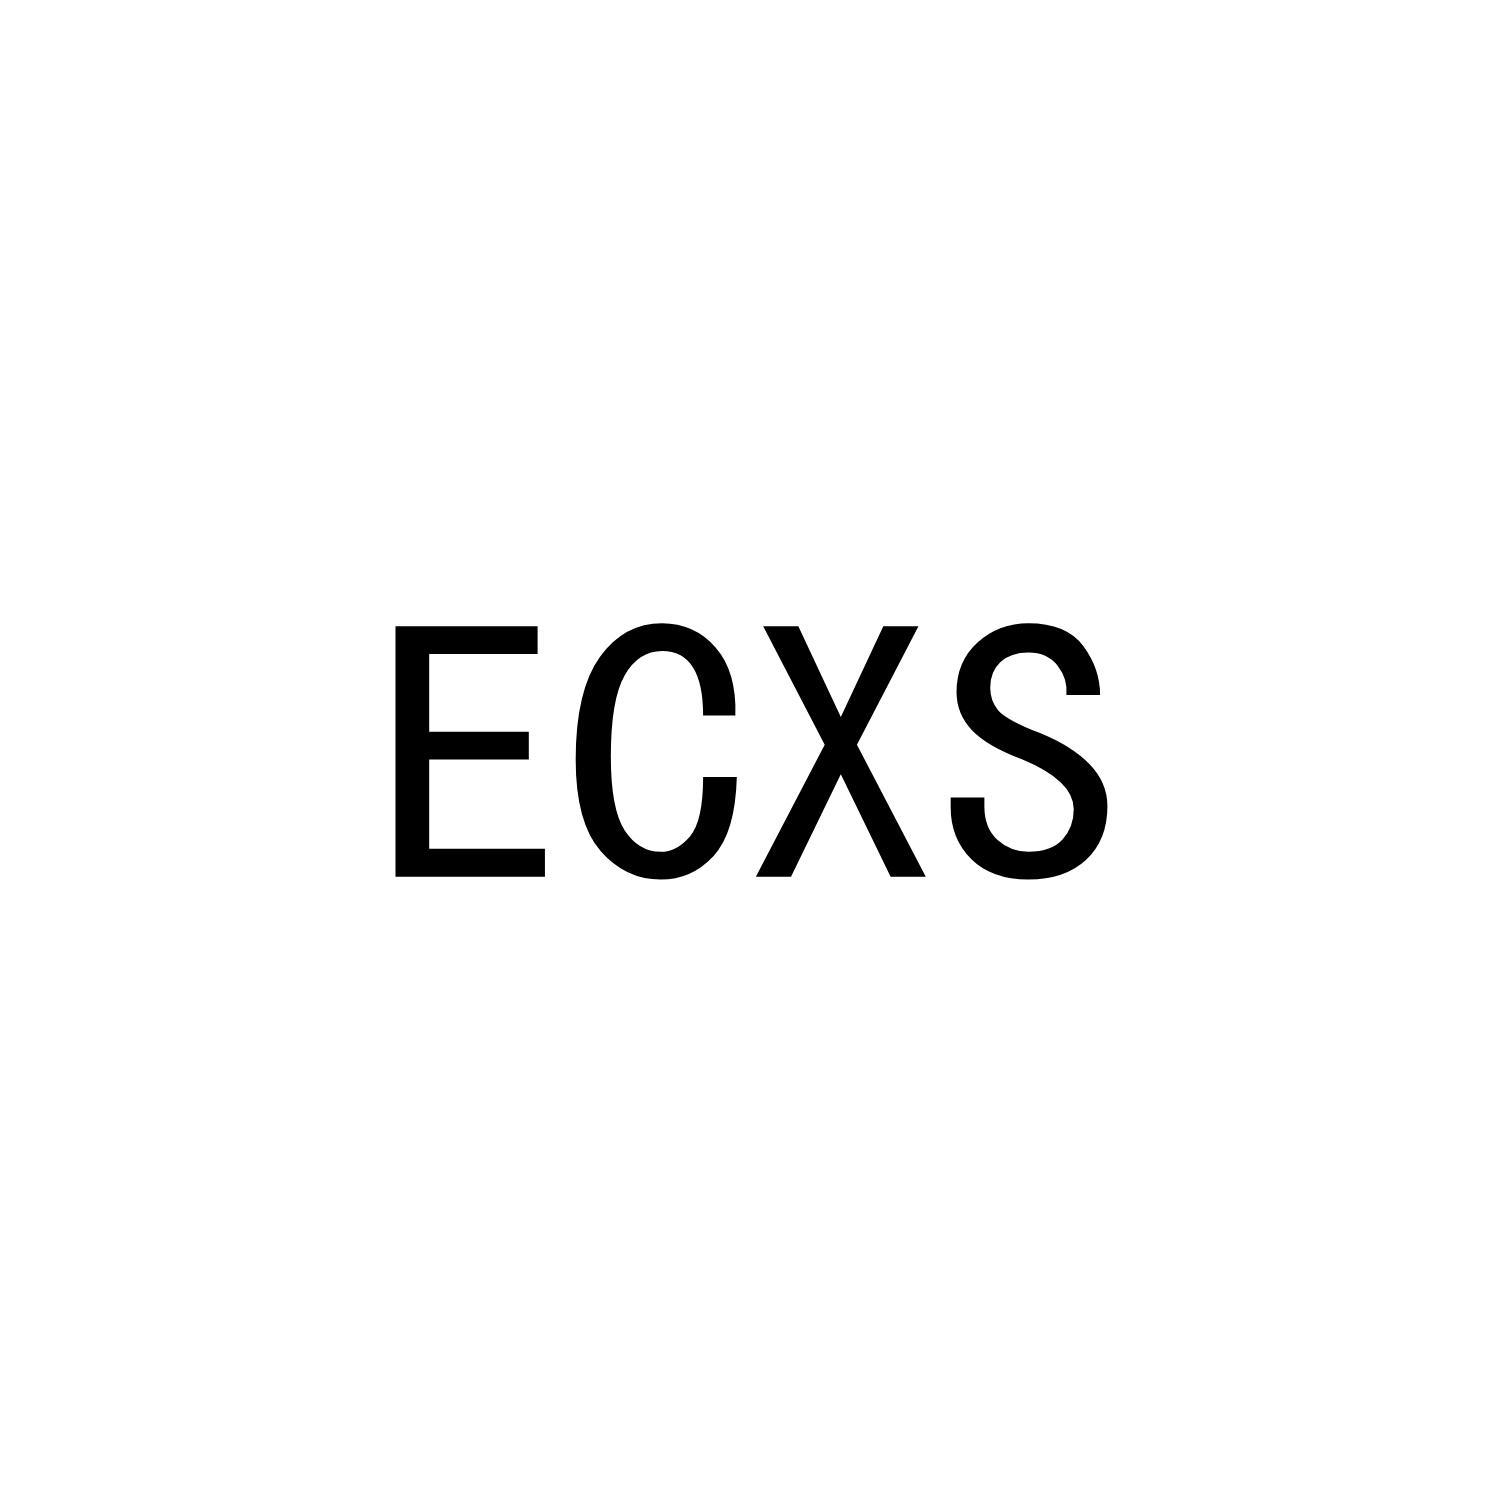 ECXS